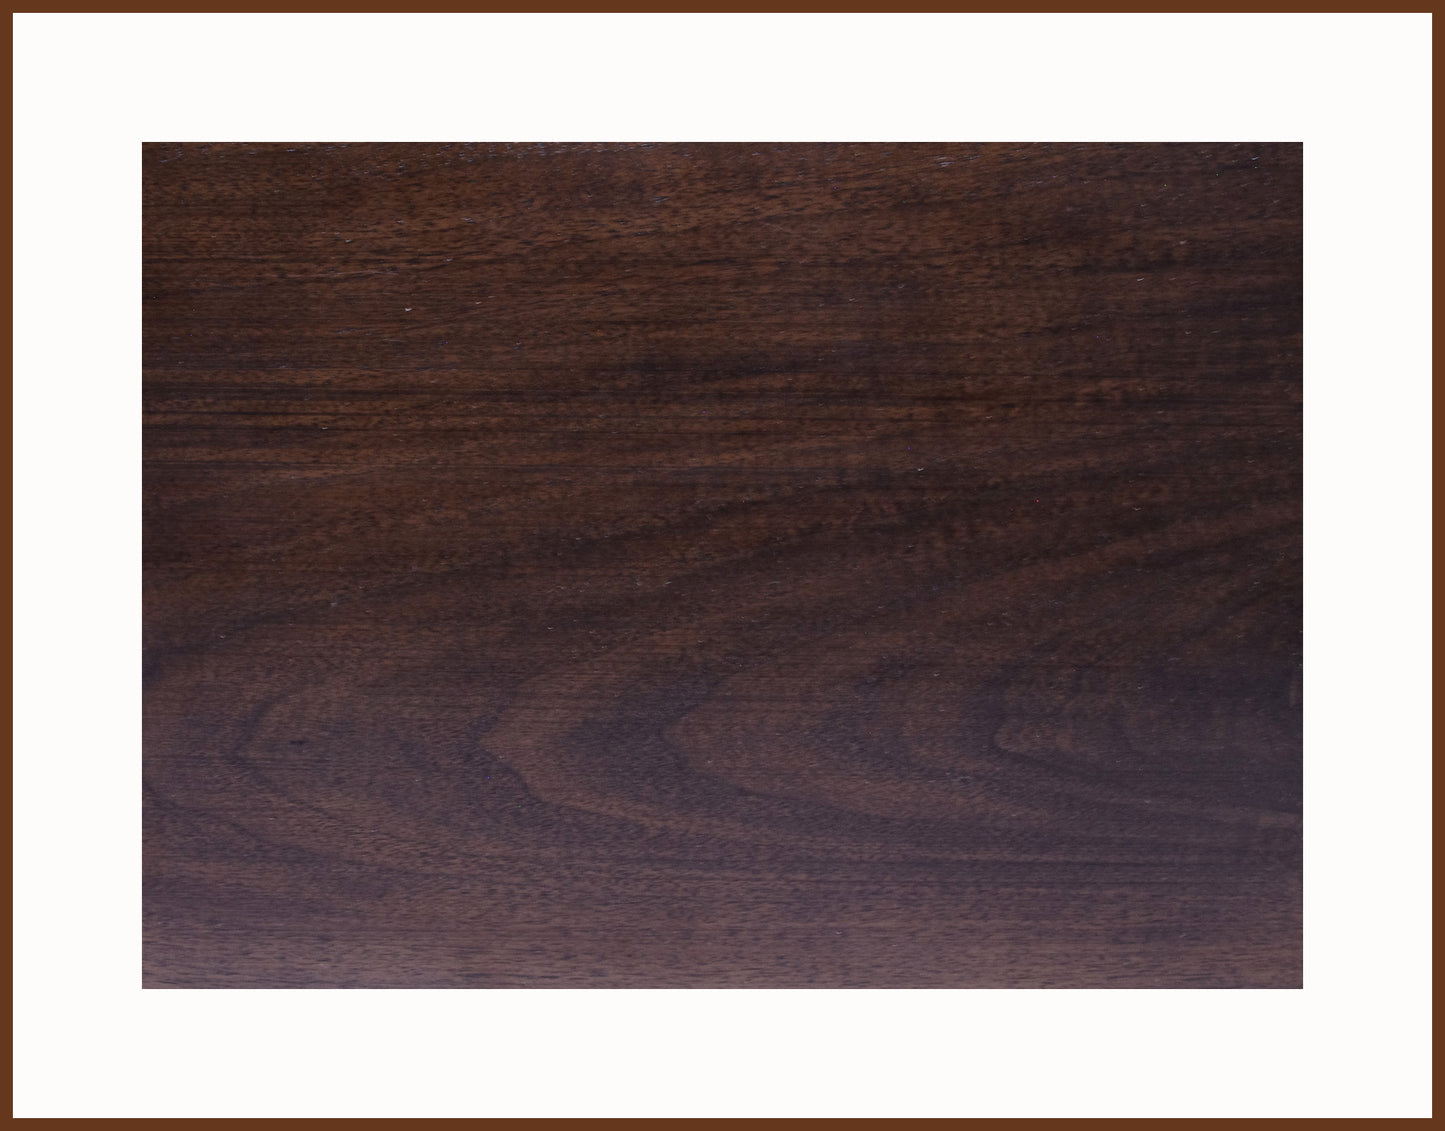 Curved Leg Bonsai Stand Walnut Hardwood with a Dark Walnut Finish 12.25"L-8.75"W-4H